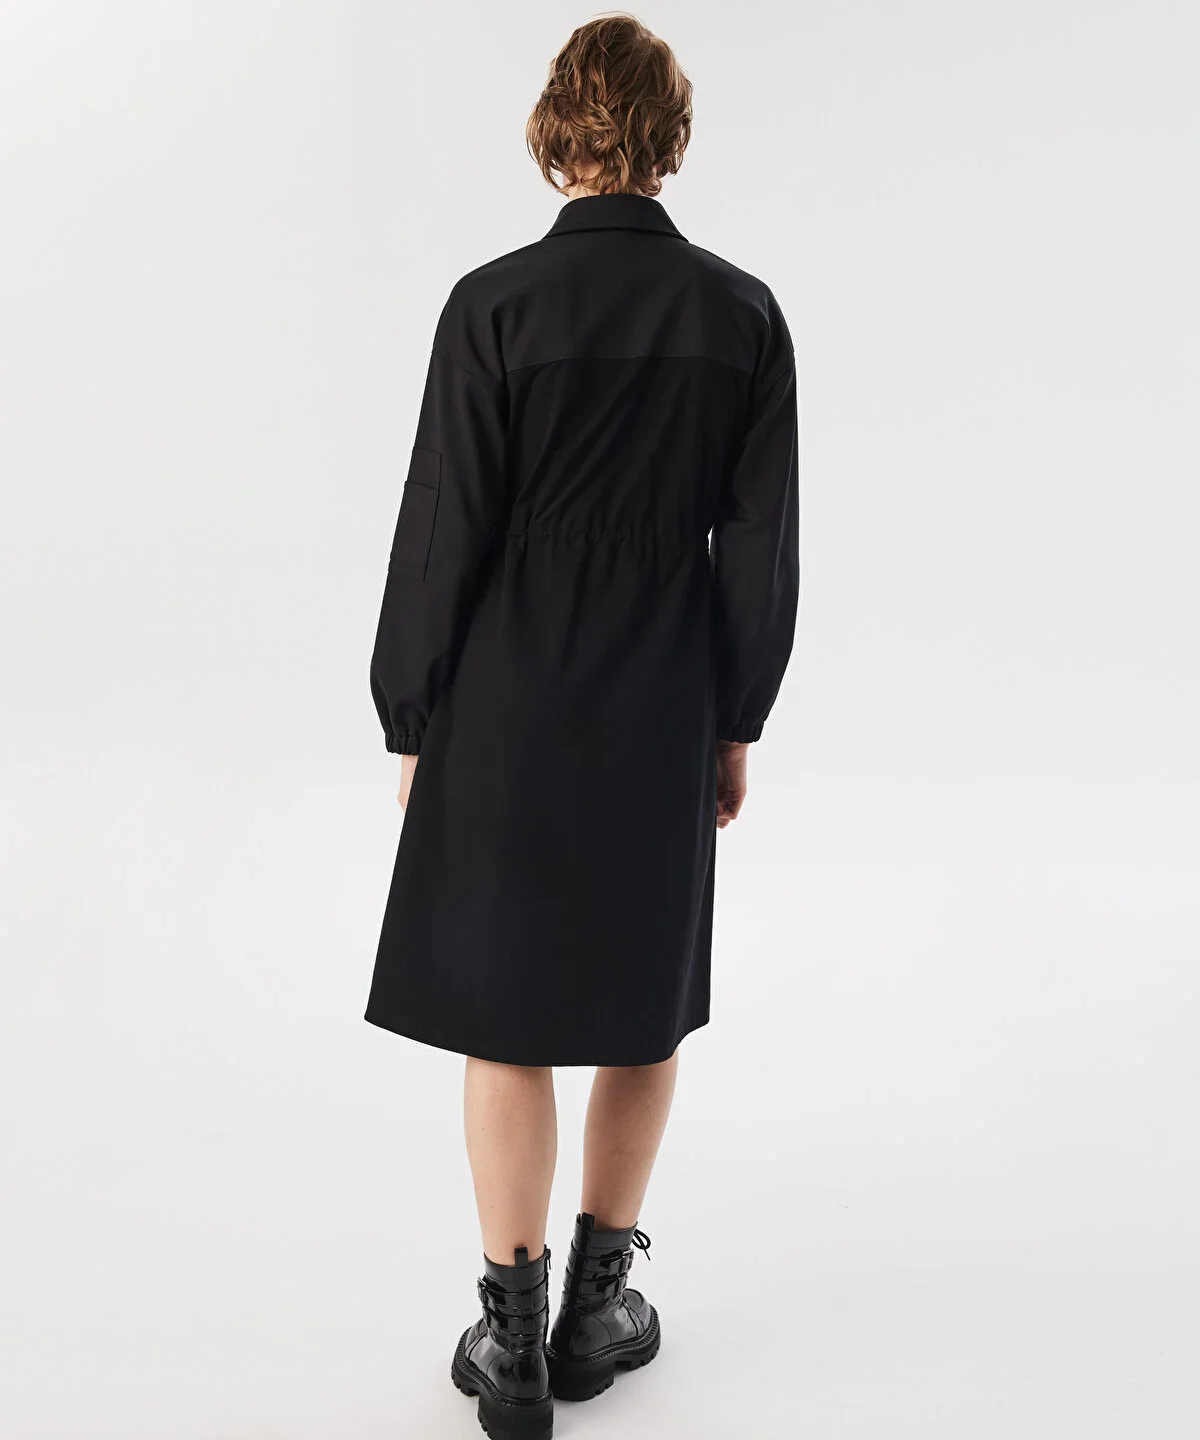 Kadın Kumaş Mix Midi Elbise - Siyah - 4